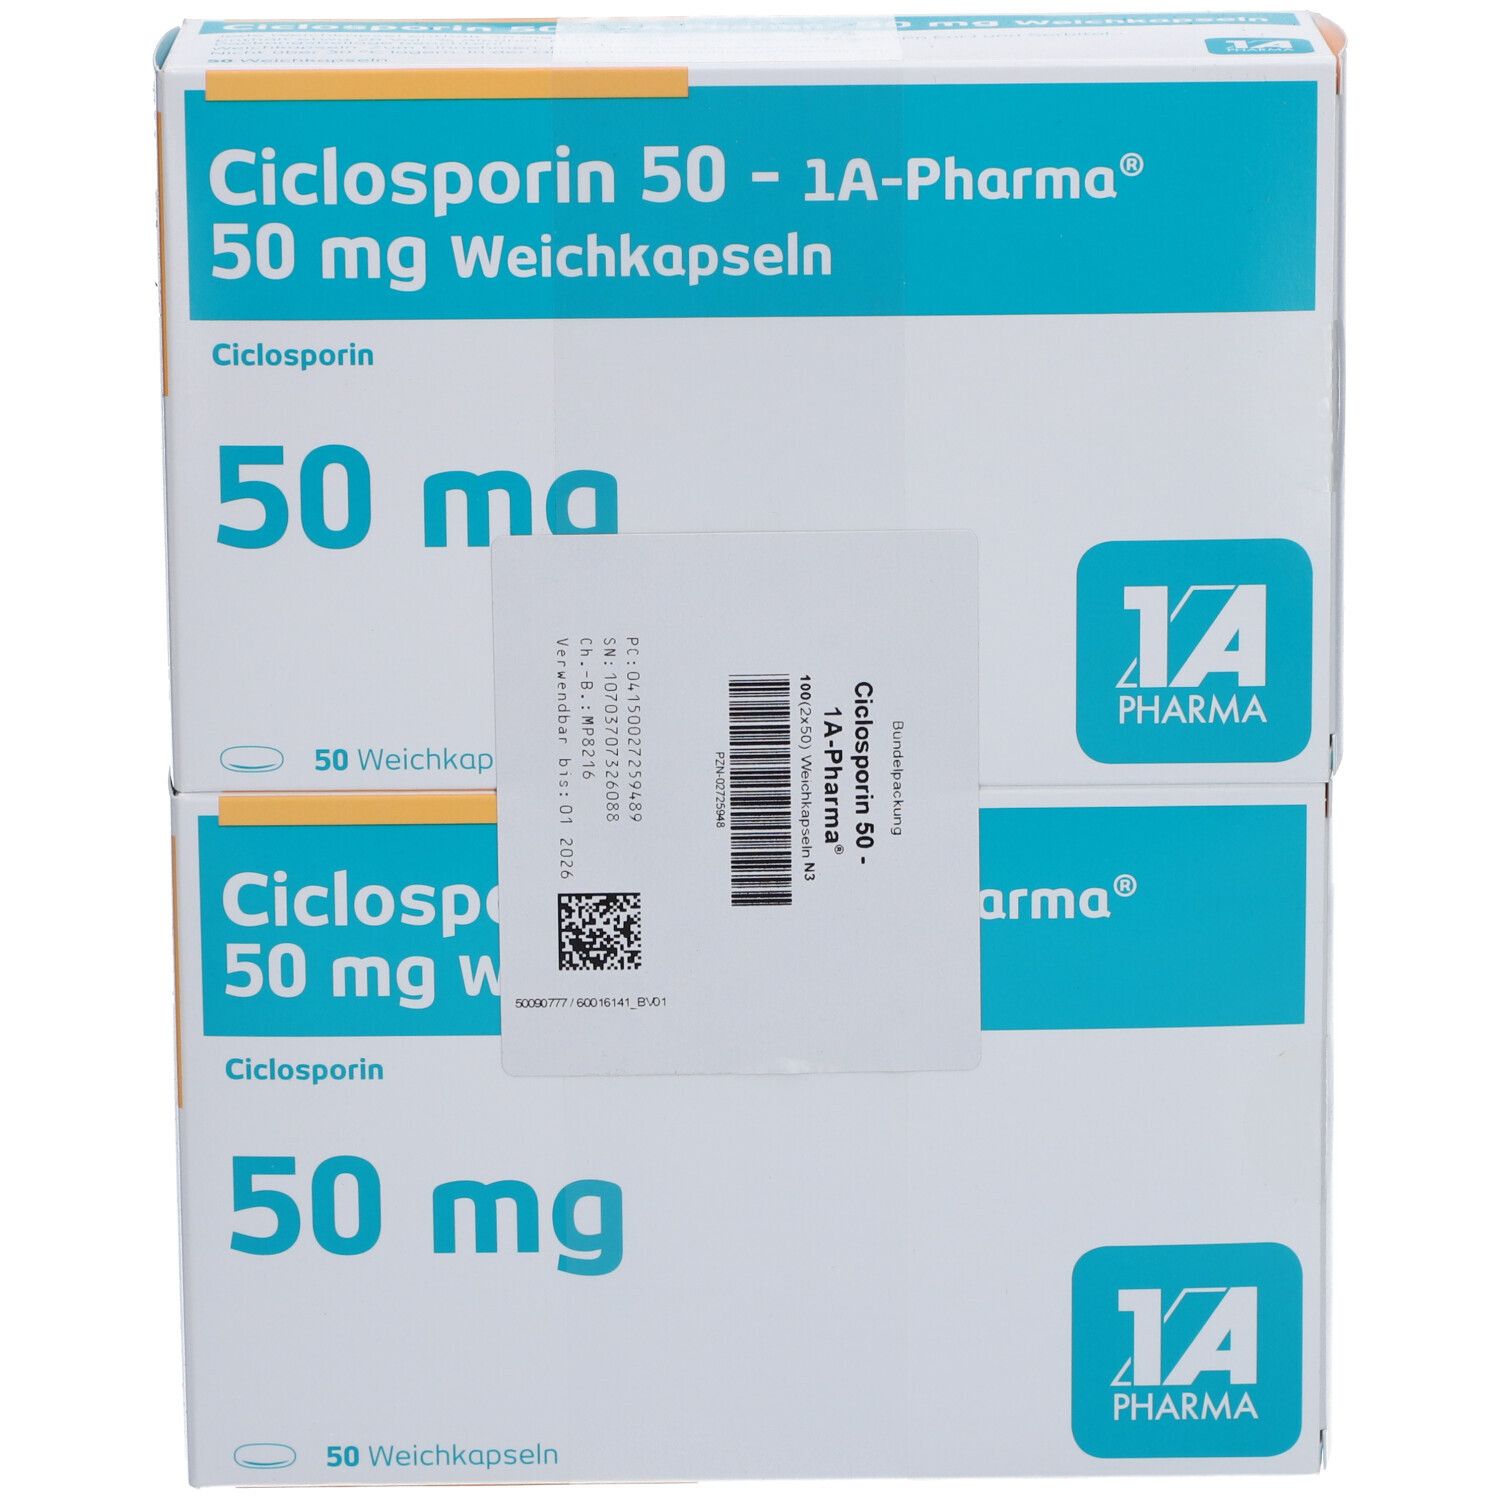 Ciclosporin 50 1A Pharma®